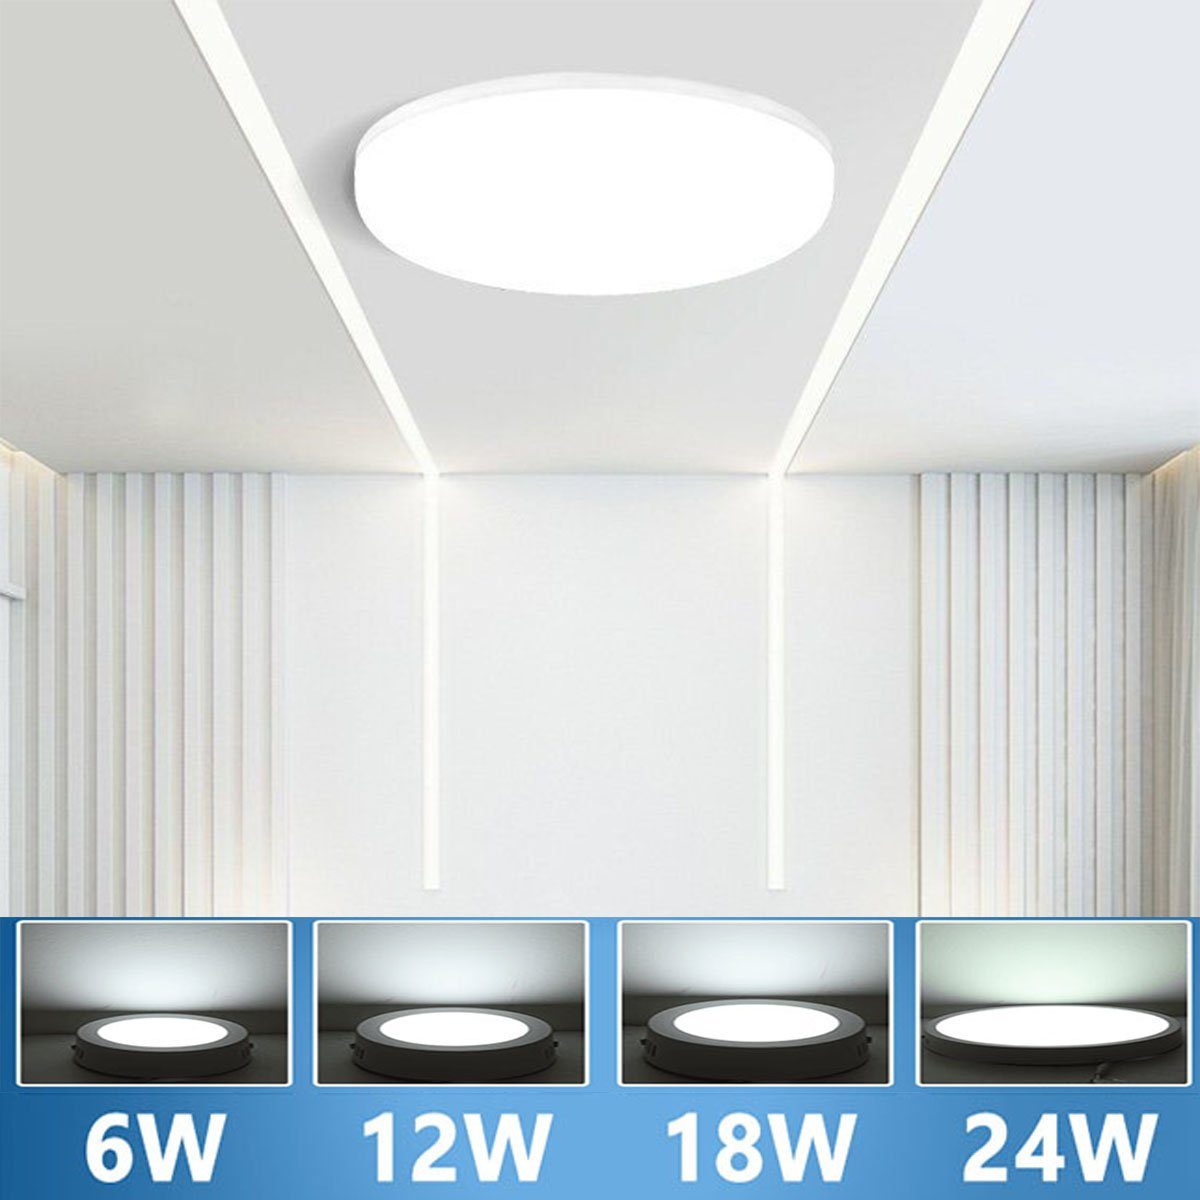 6W-24W, Lampe 30 Strahler fest Lampe Tageslicht oyajia LED integriert Leuchte / Aufputz Deckenlampe W cm 24 LED Deckenleuchte